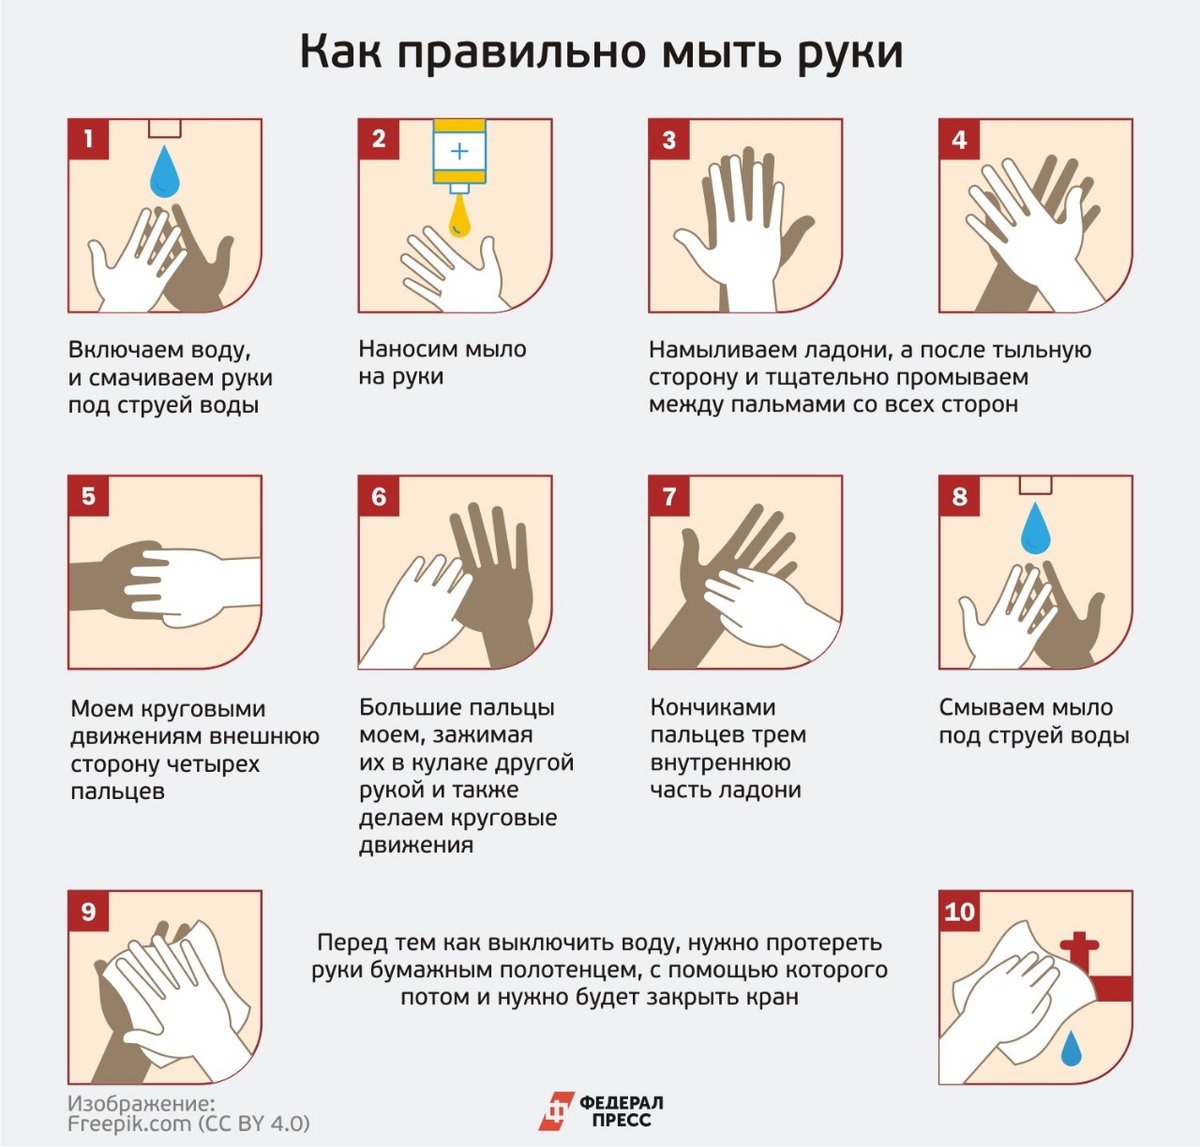 Во время мытья рук необходимо гигтест